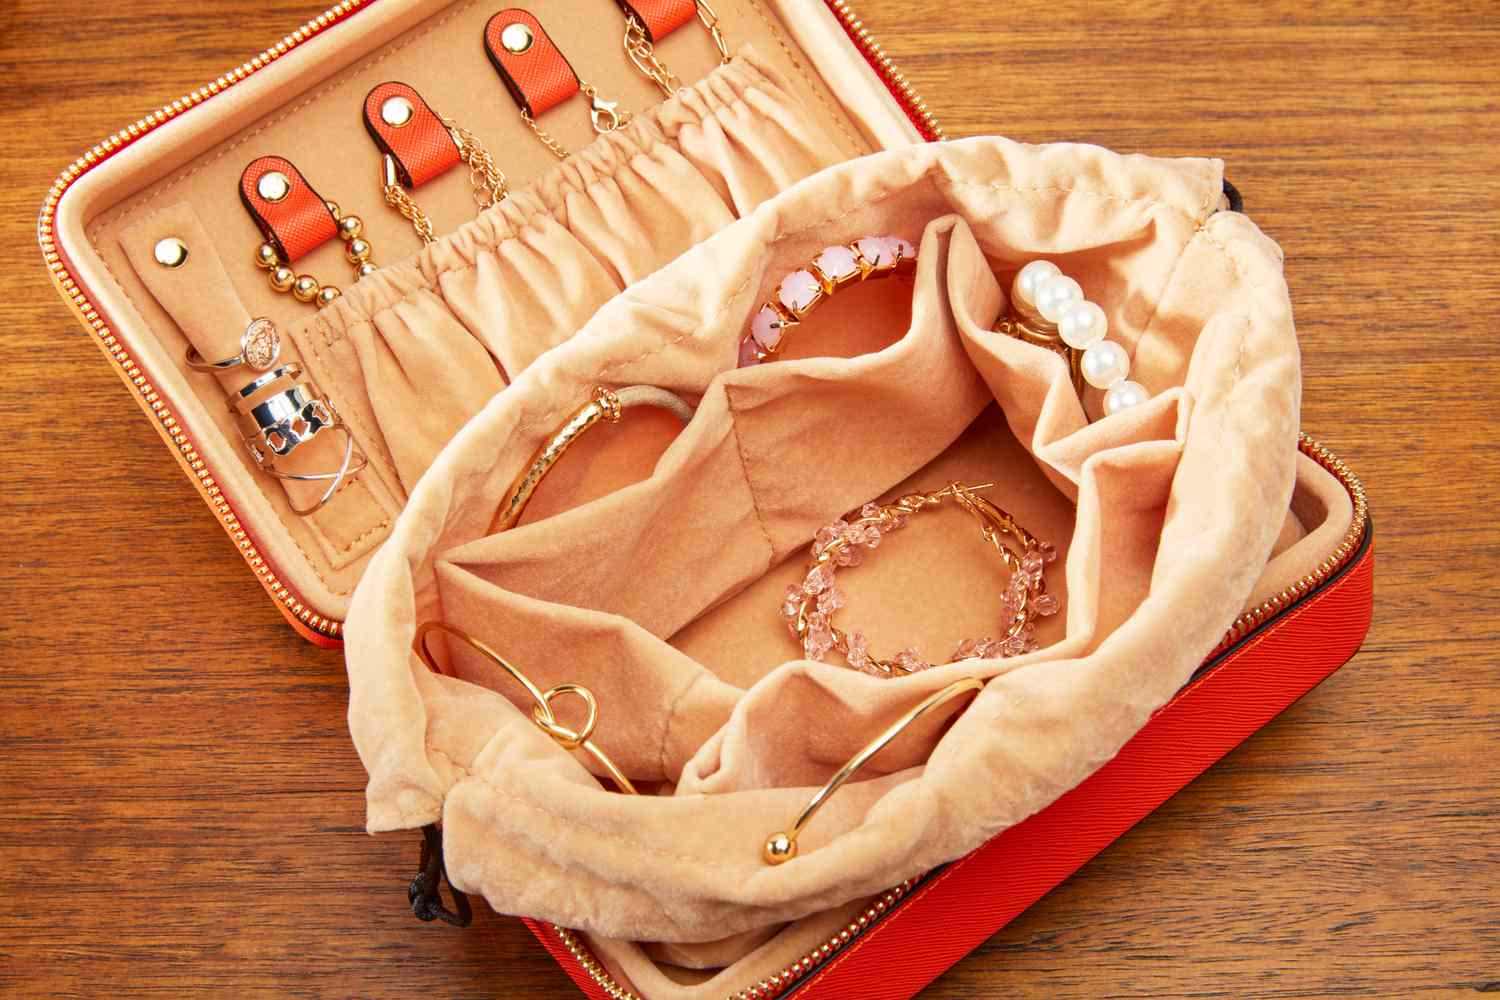 The Calpak Jewelry Case with jewelry inside